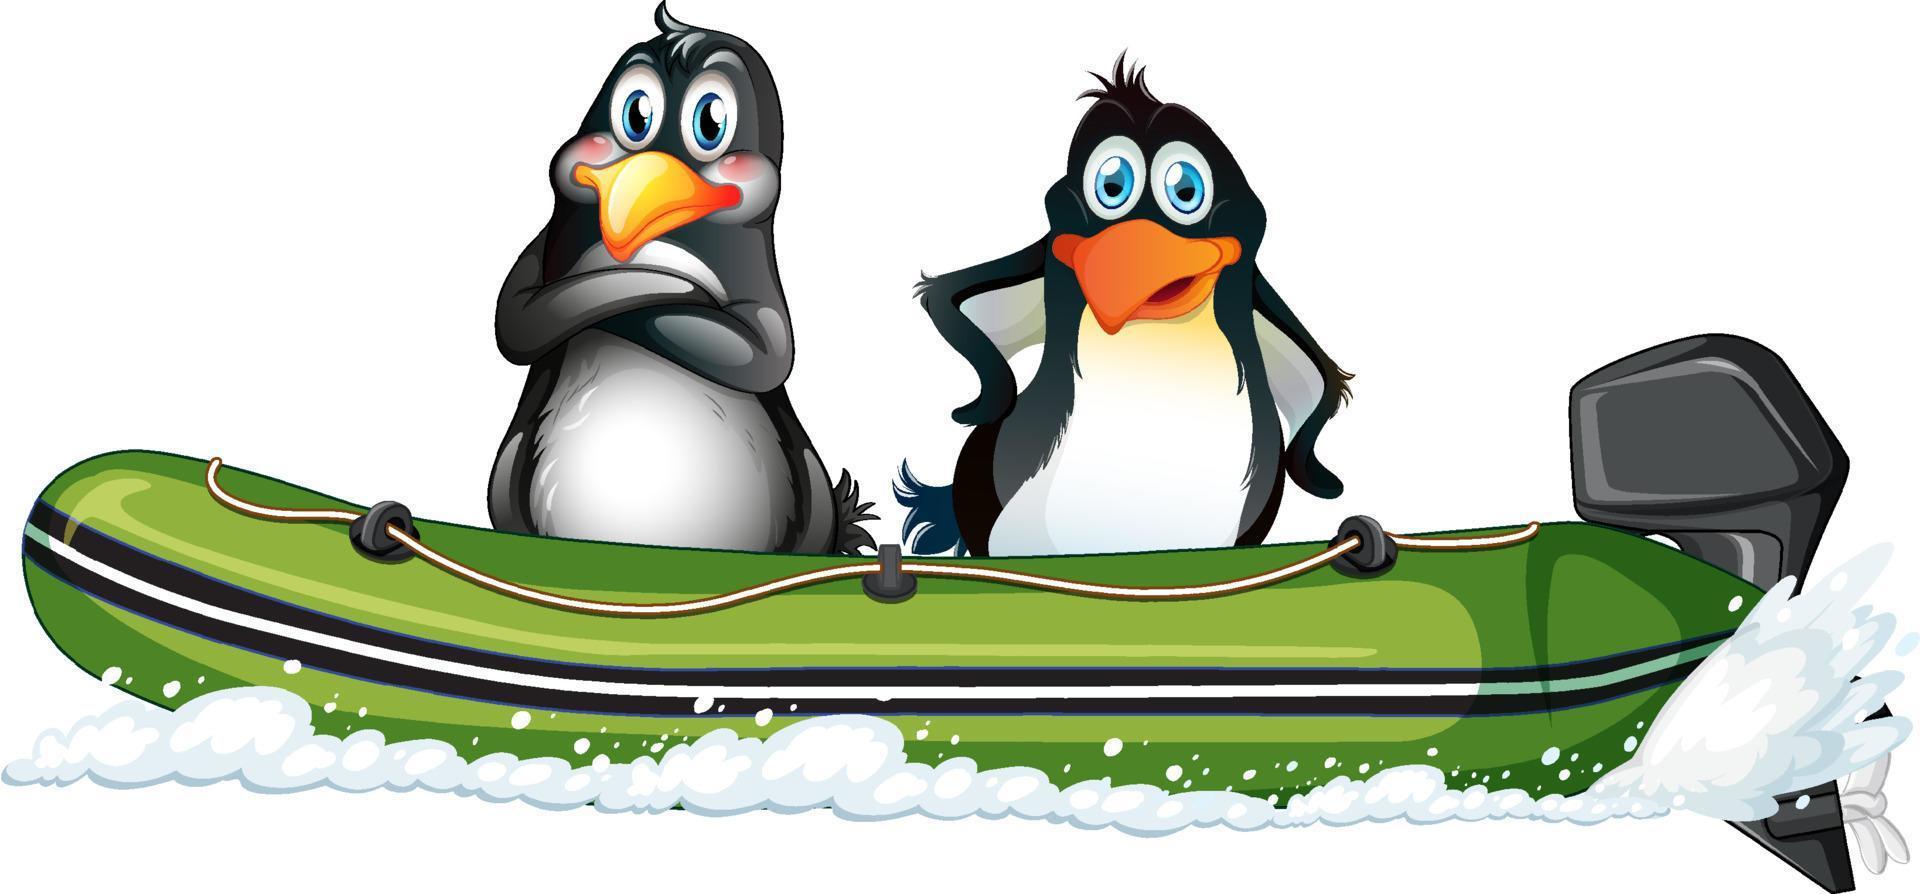 pingviner på en fartbåt i tecknad stil vektor